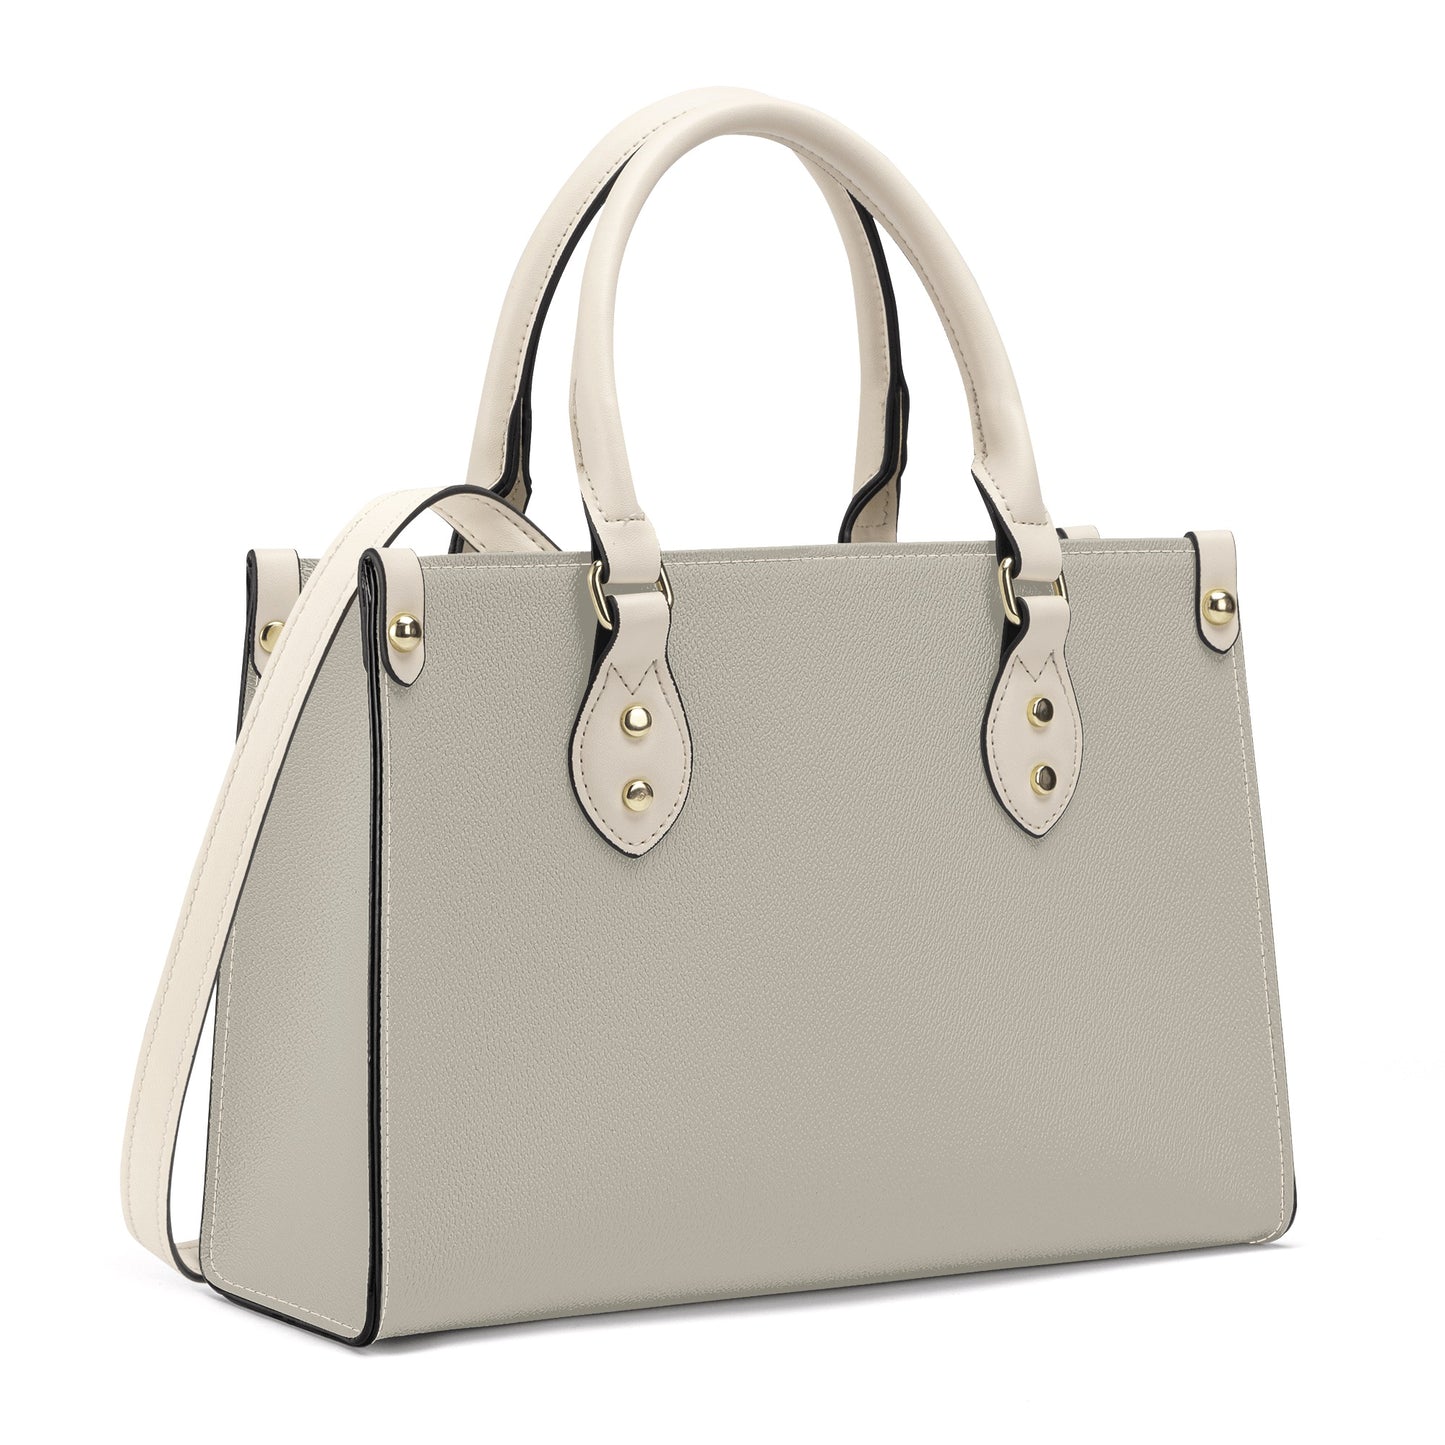 Tito - Luxury Women Handbag